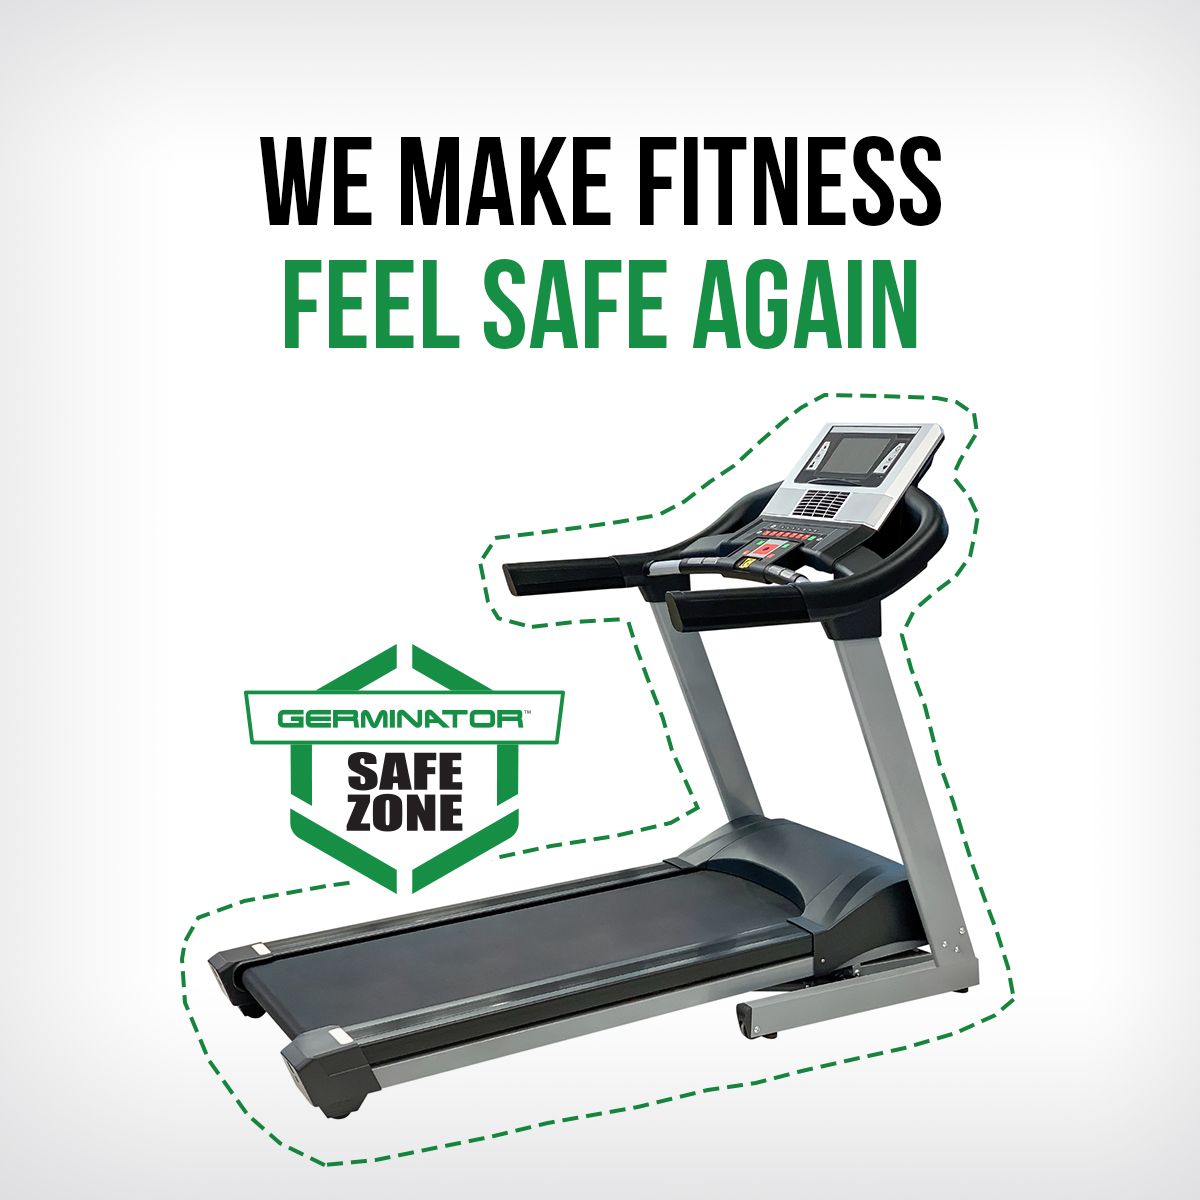 We Make Fitness Feel Safe Again